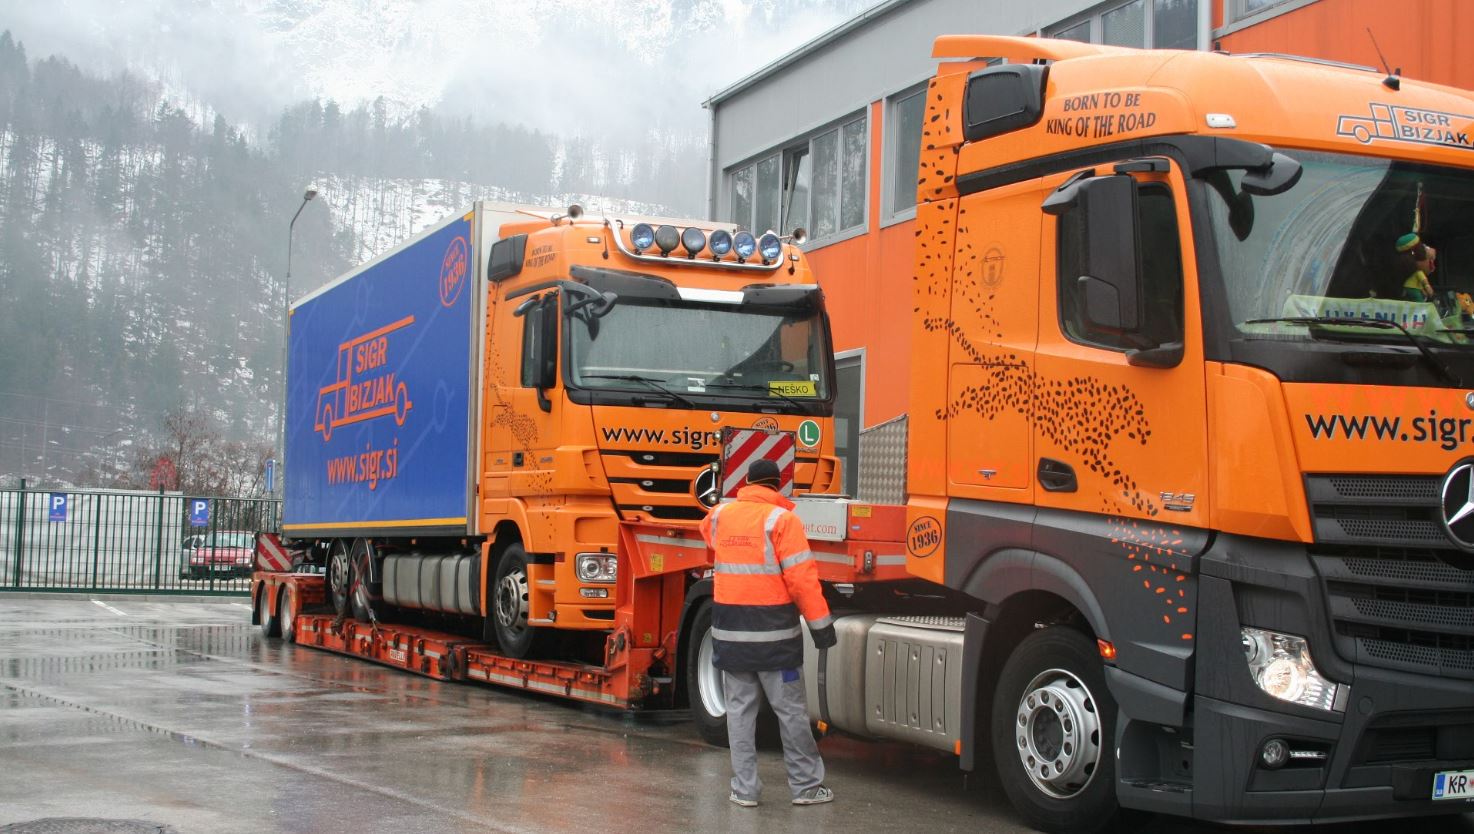 Sigr Bizjak izredni prevoz tovornjak